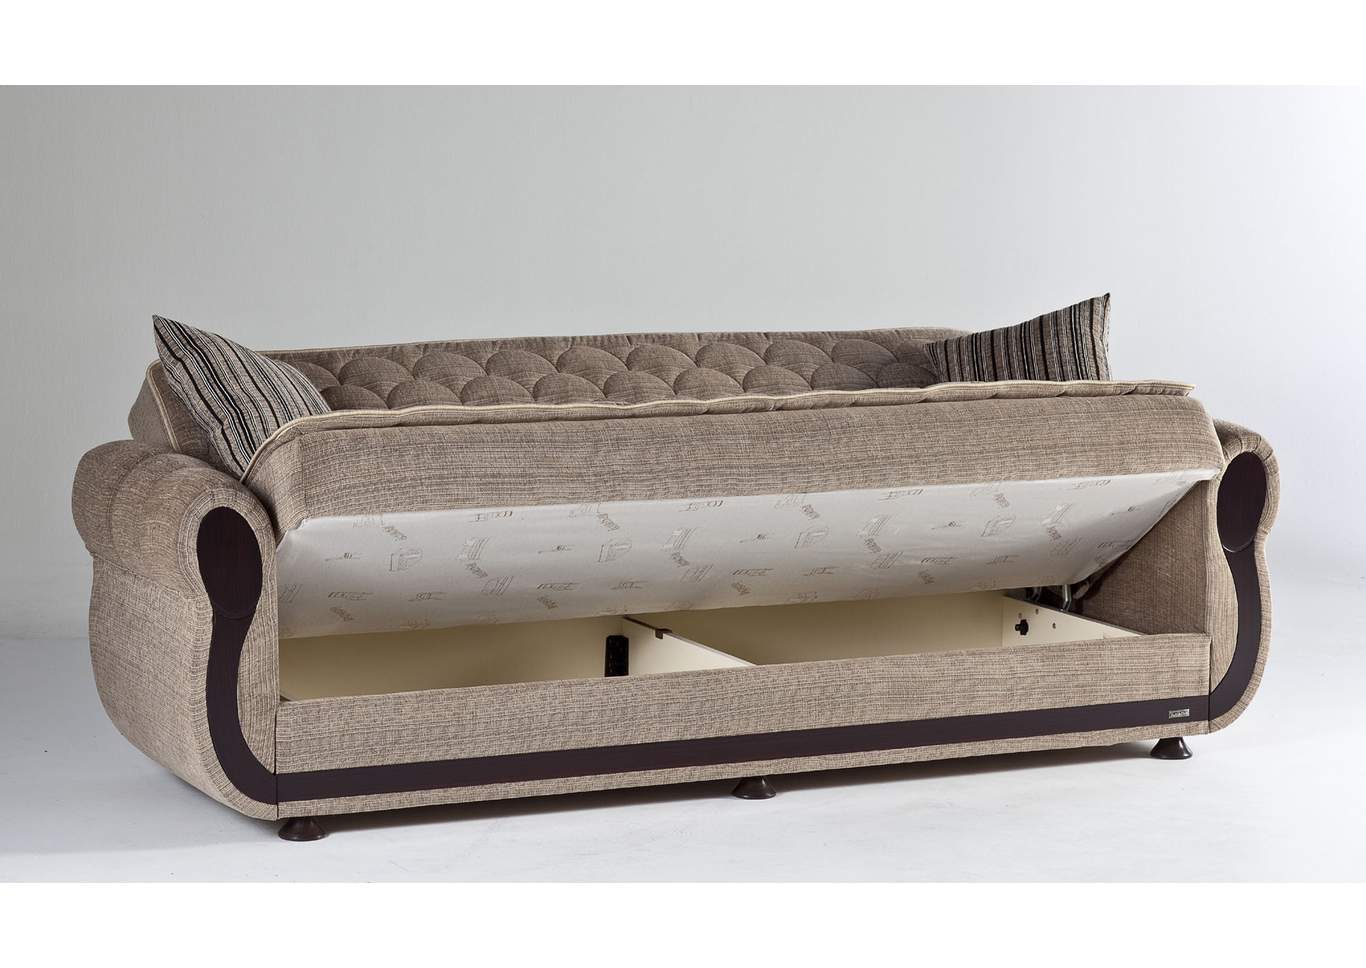 Argos Zilkade Light Brown 3 Seat Sleeper Sofa W/ Storage,Hudson Furniture & Bedding